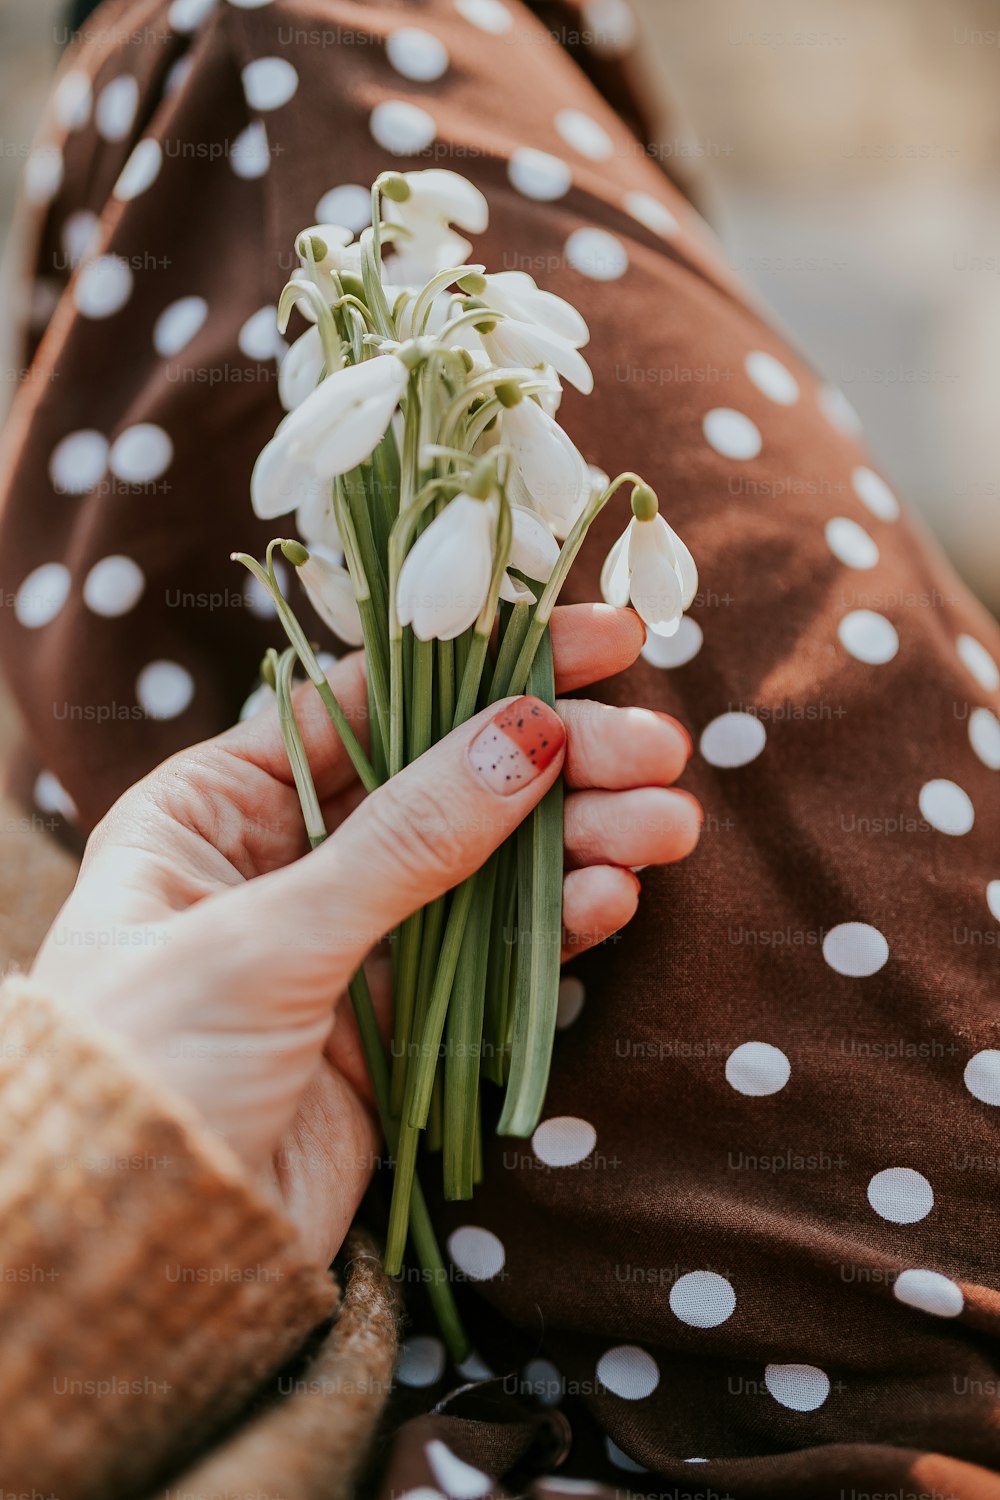 uma pessoa segurando um buquê de flores brancas